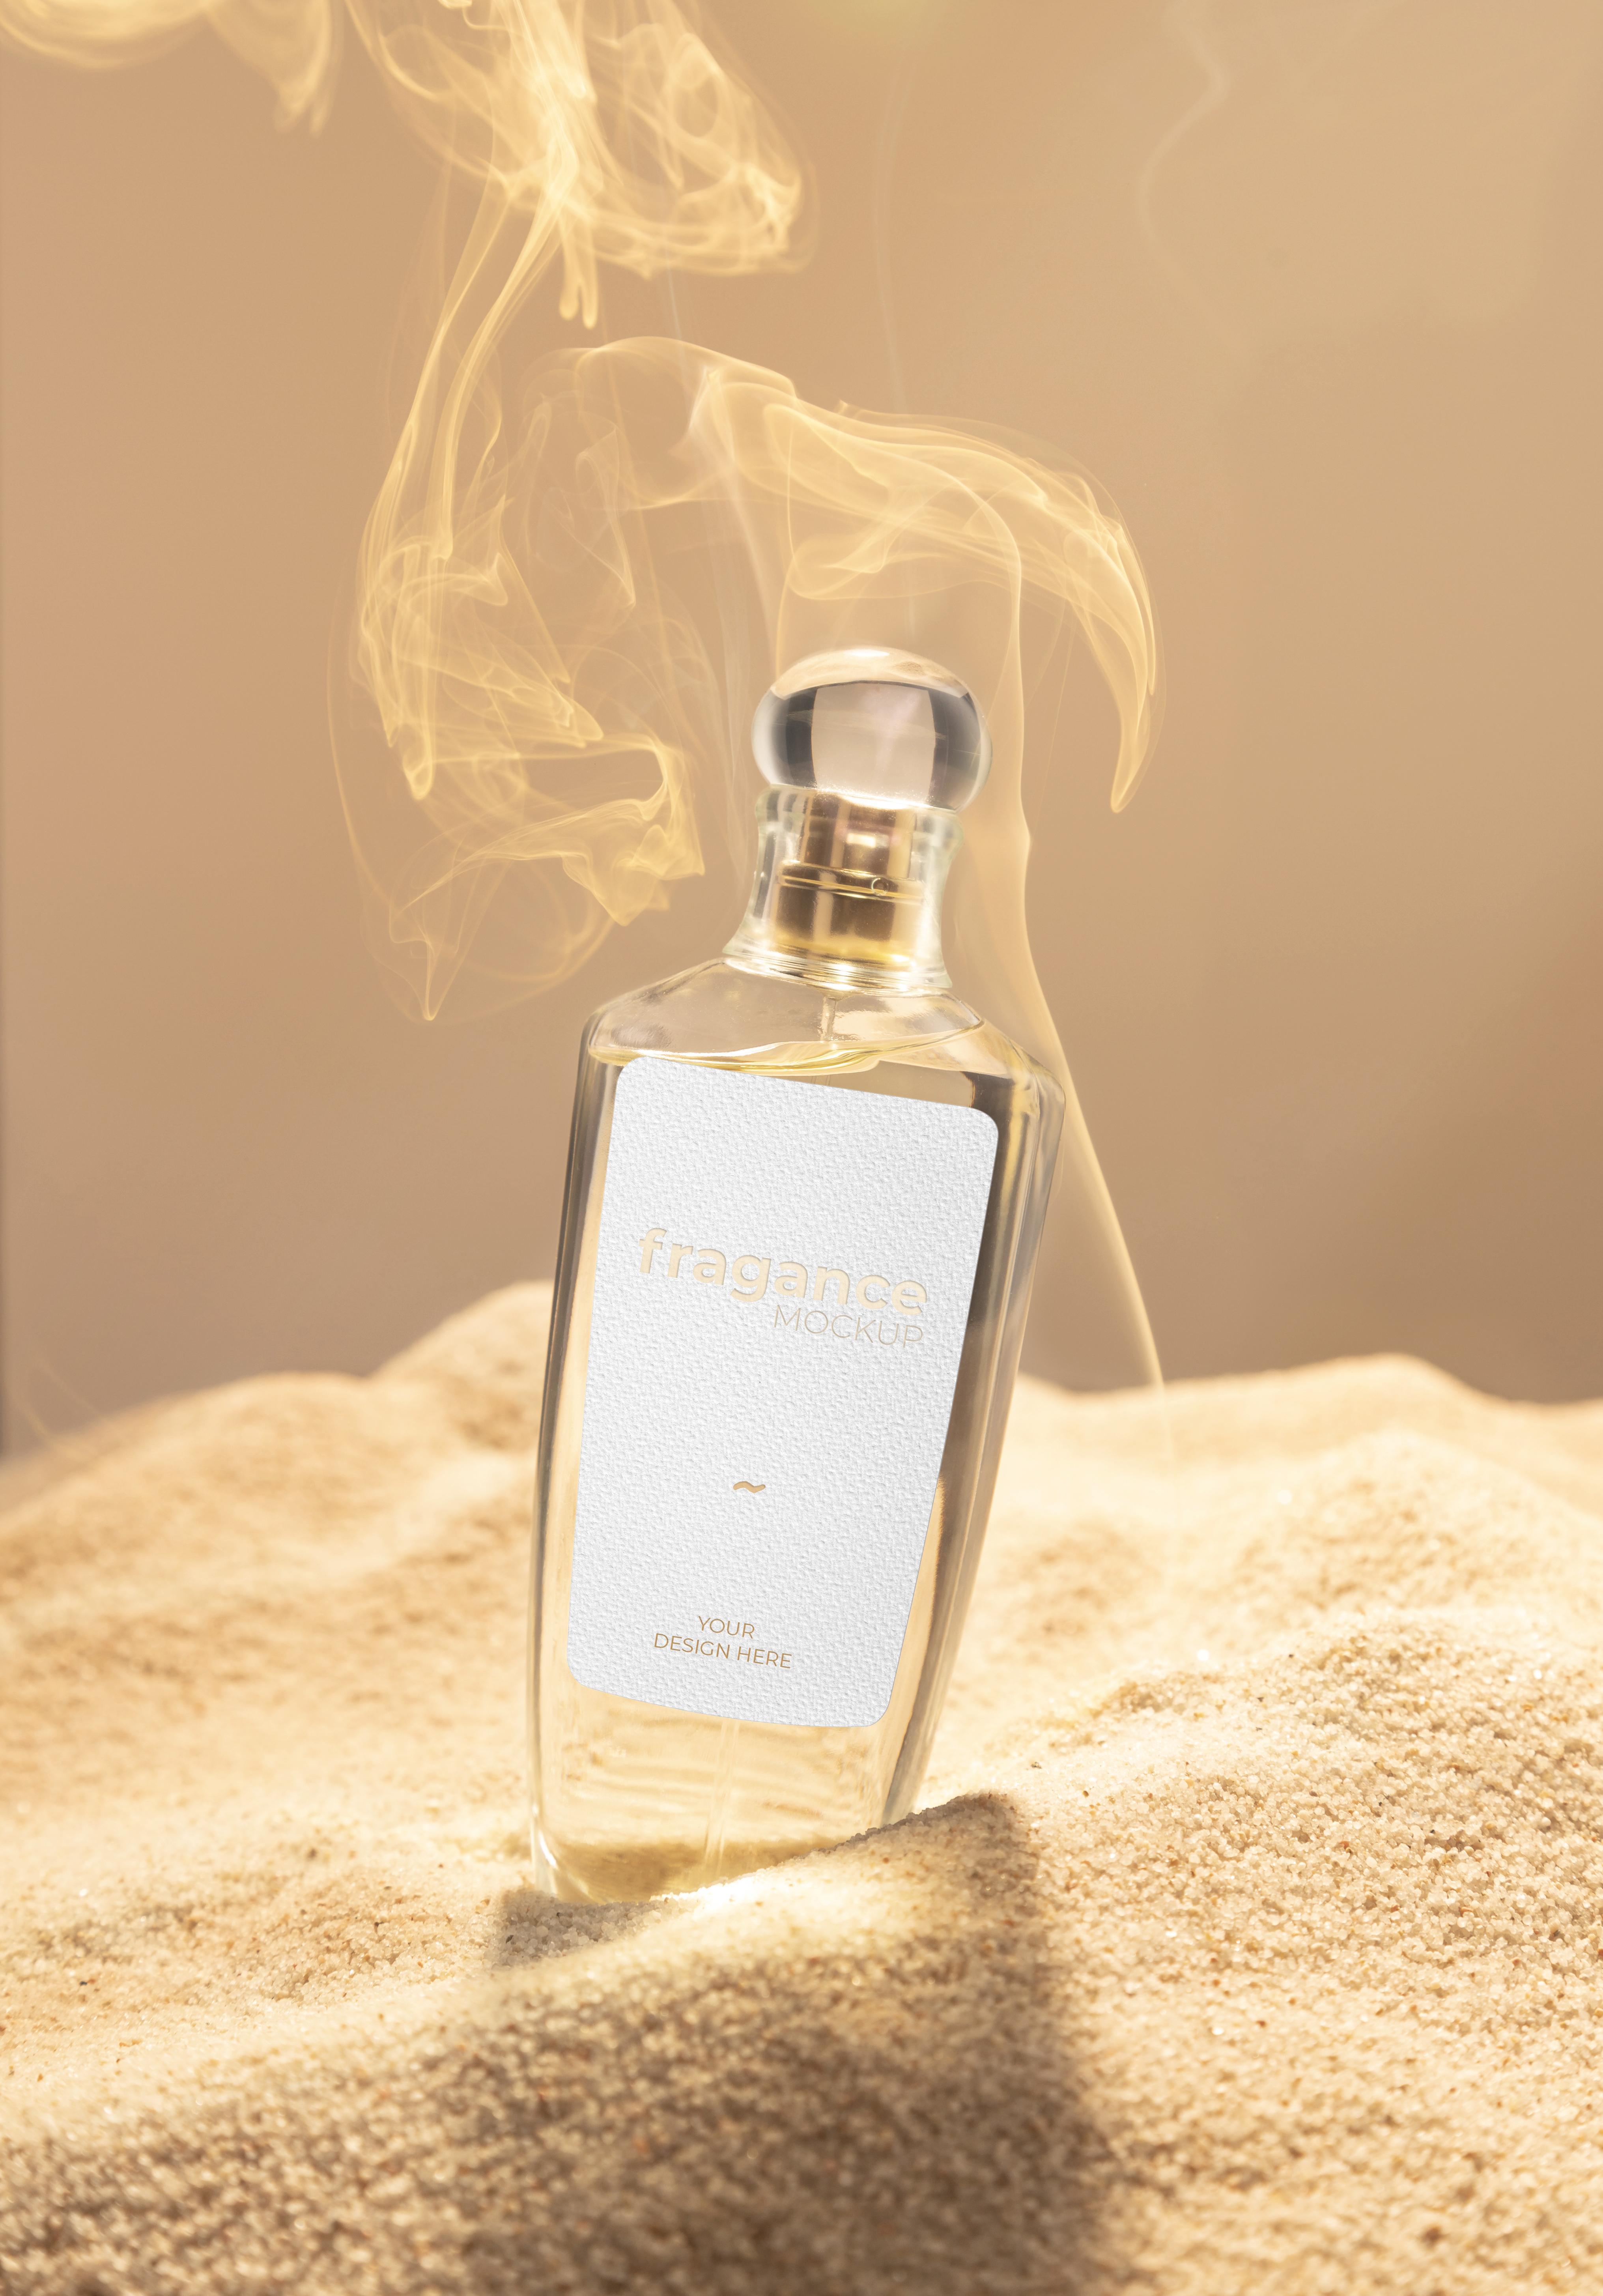 Atualidade Cosmética- Hinode traz dois novos perfumes para seu portfólio